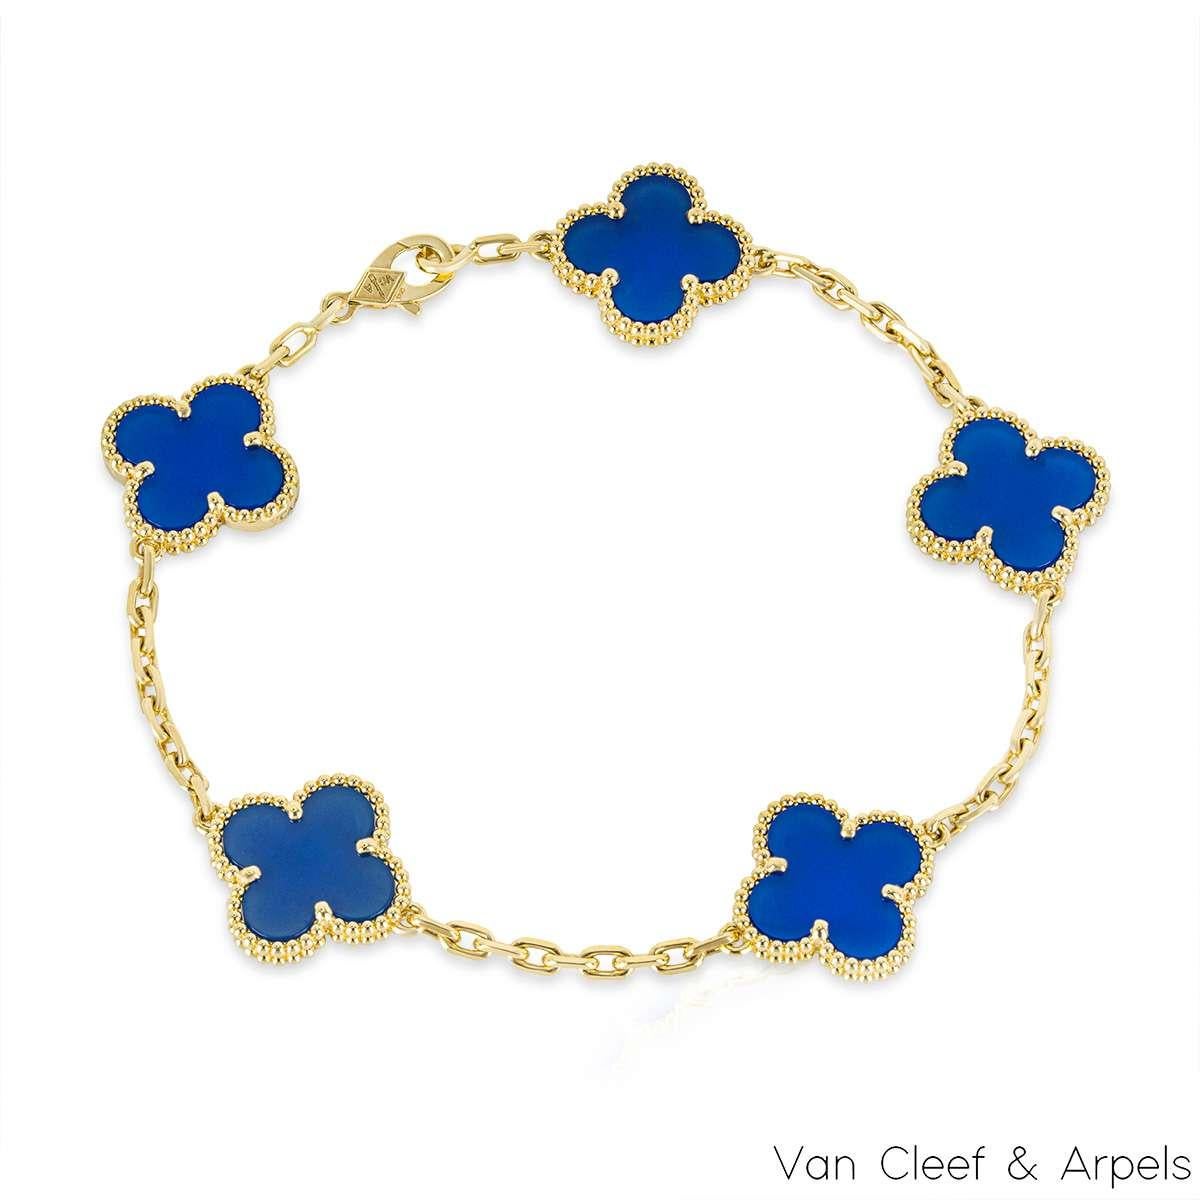 Magnifique bracelet en or jaune 18 carats en agate bleue de la collection Vintage Alhambra de Van Cleef and Arpels. Le bracelet est composé de 5 motifs de trèfle emblématiques, chacun serti d'un bord perlé et d'une incrustation d'agate bleue, sertie